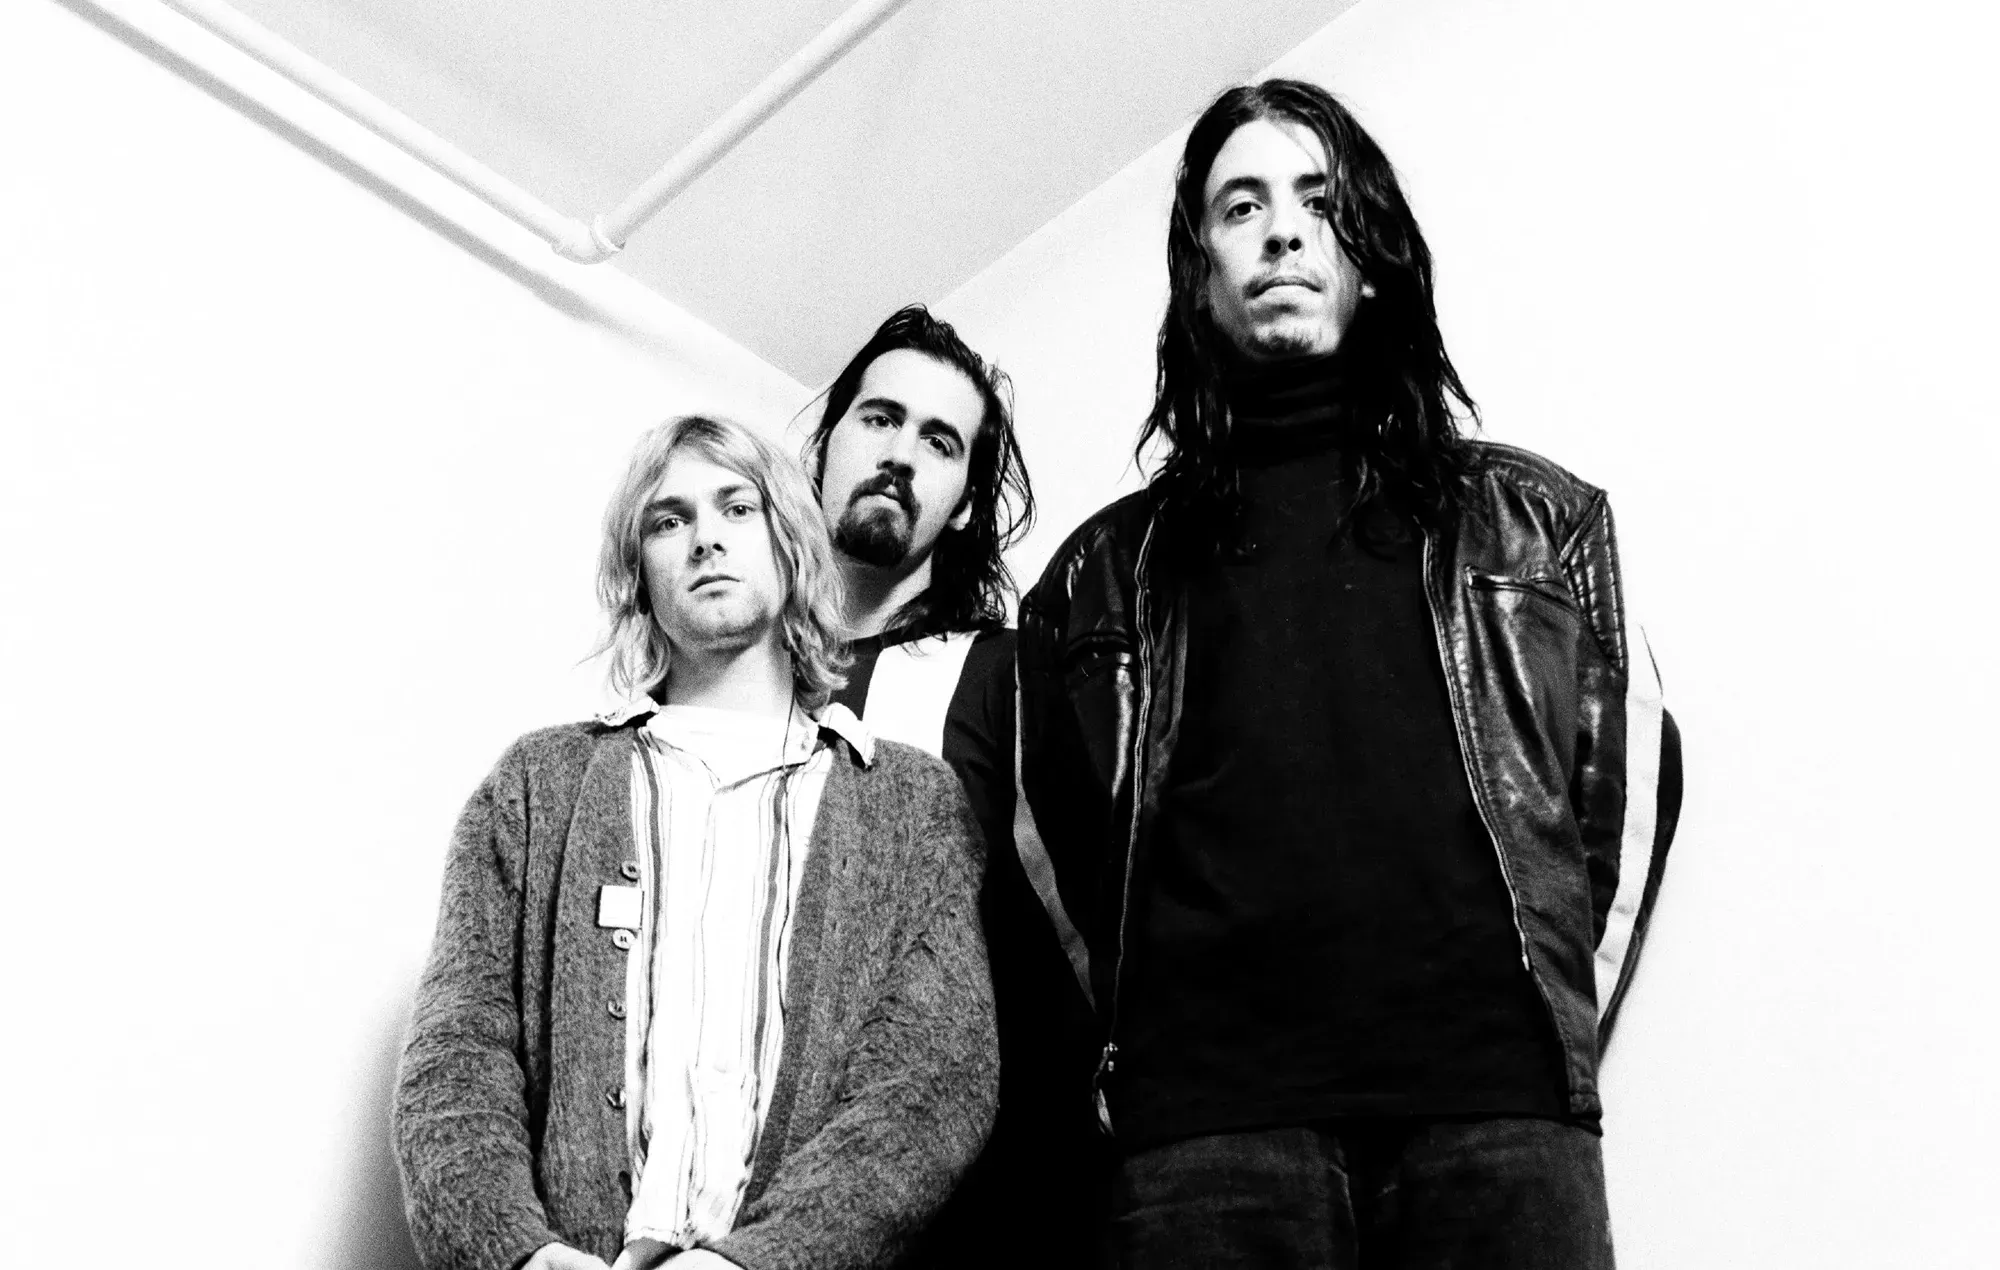 Un biógrafo de Nirvana afirma que Kurt Cobain estaba 